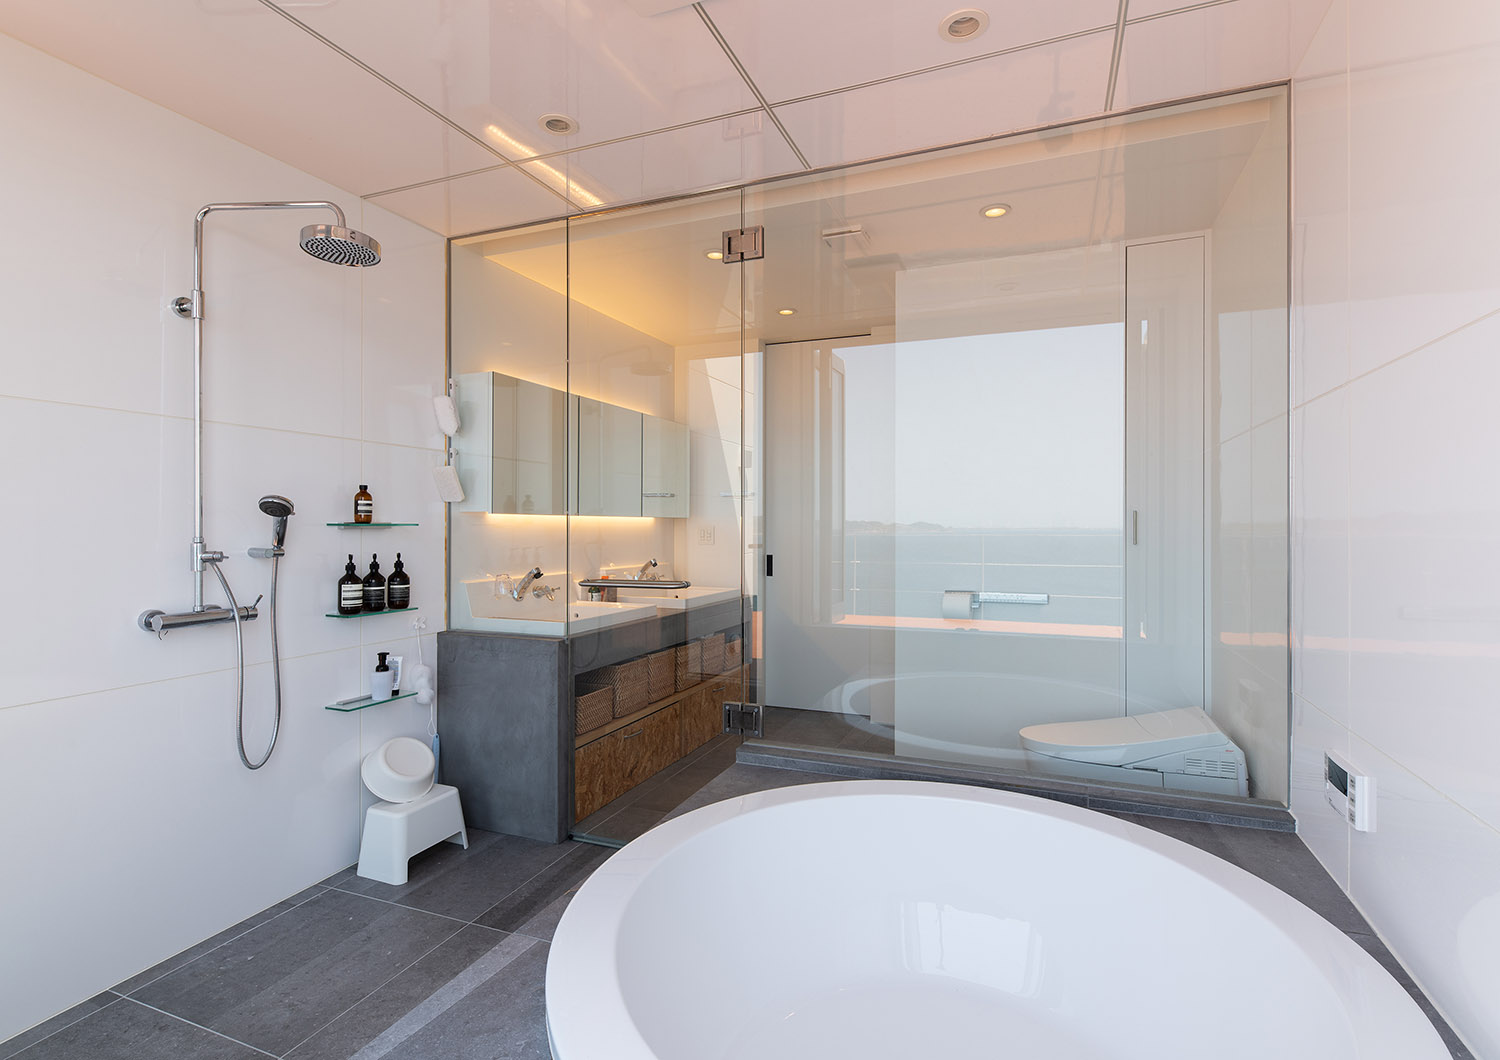 洗面所と浴室がガラス扉で仕切られたホテルのような浴室・デザイン住宅